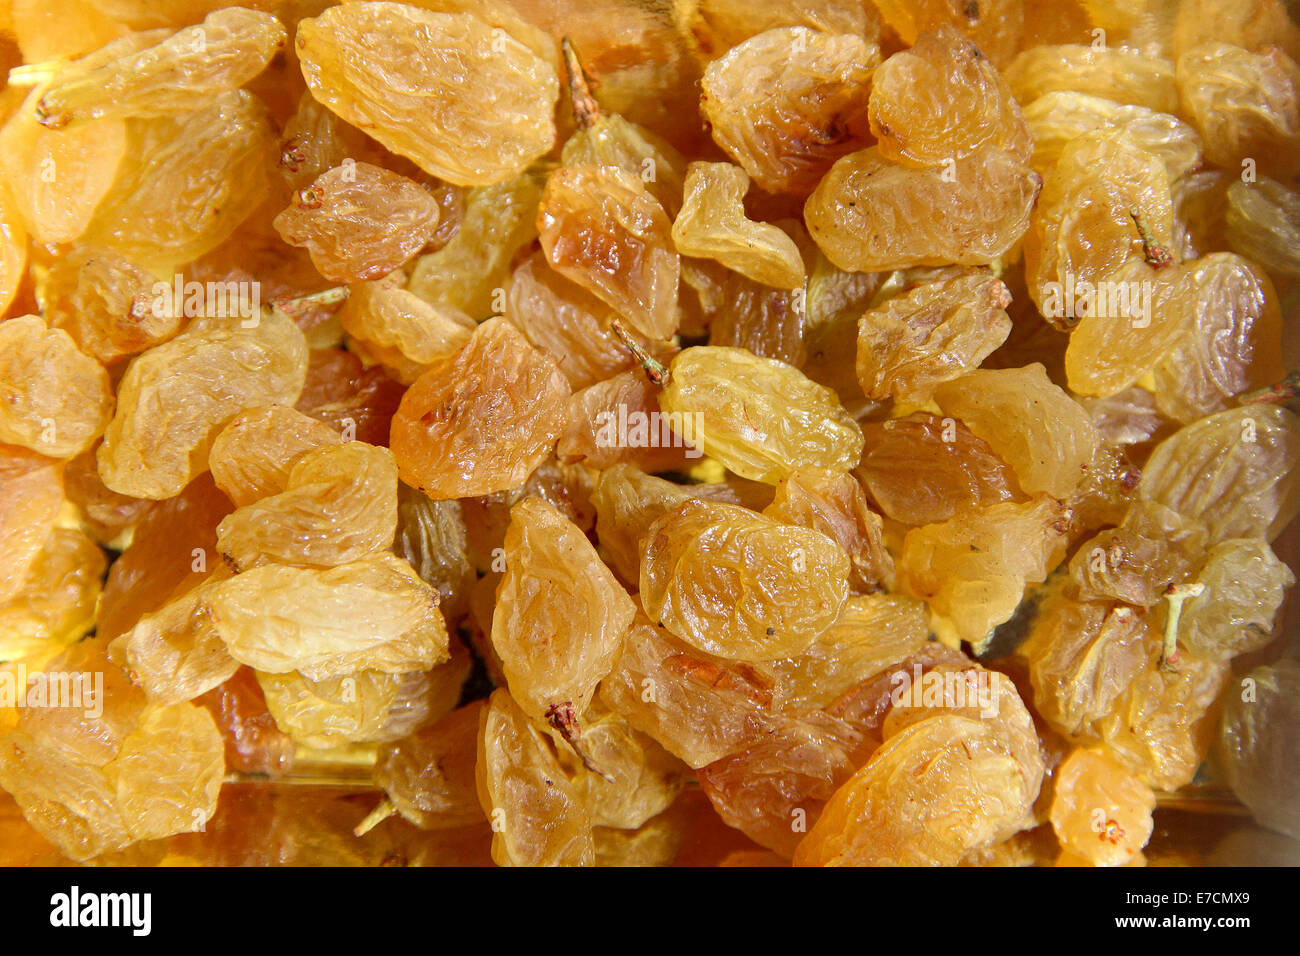 Les raisins secs sont de couleur jaune brun, nutritifs, aigre et doux fruits raisins secs Banque D'Images